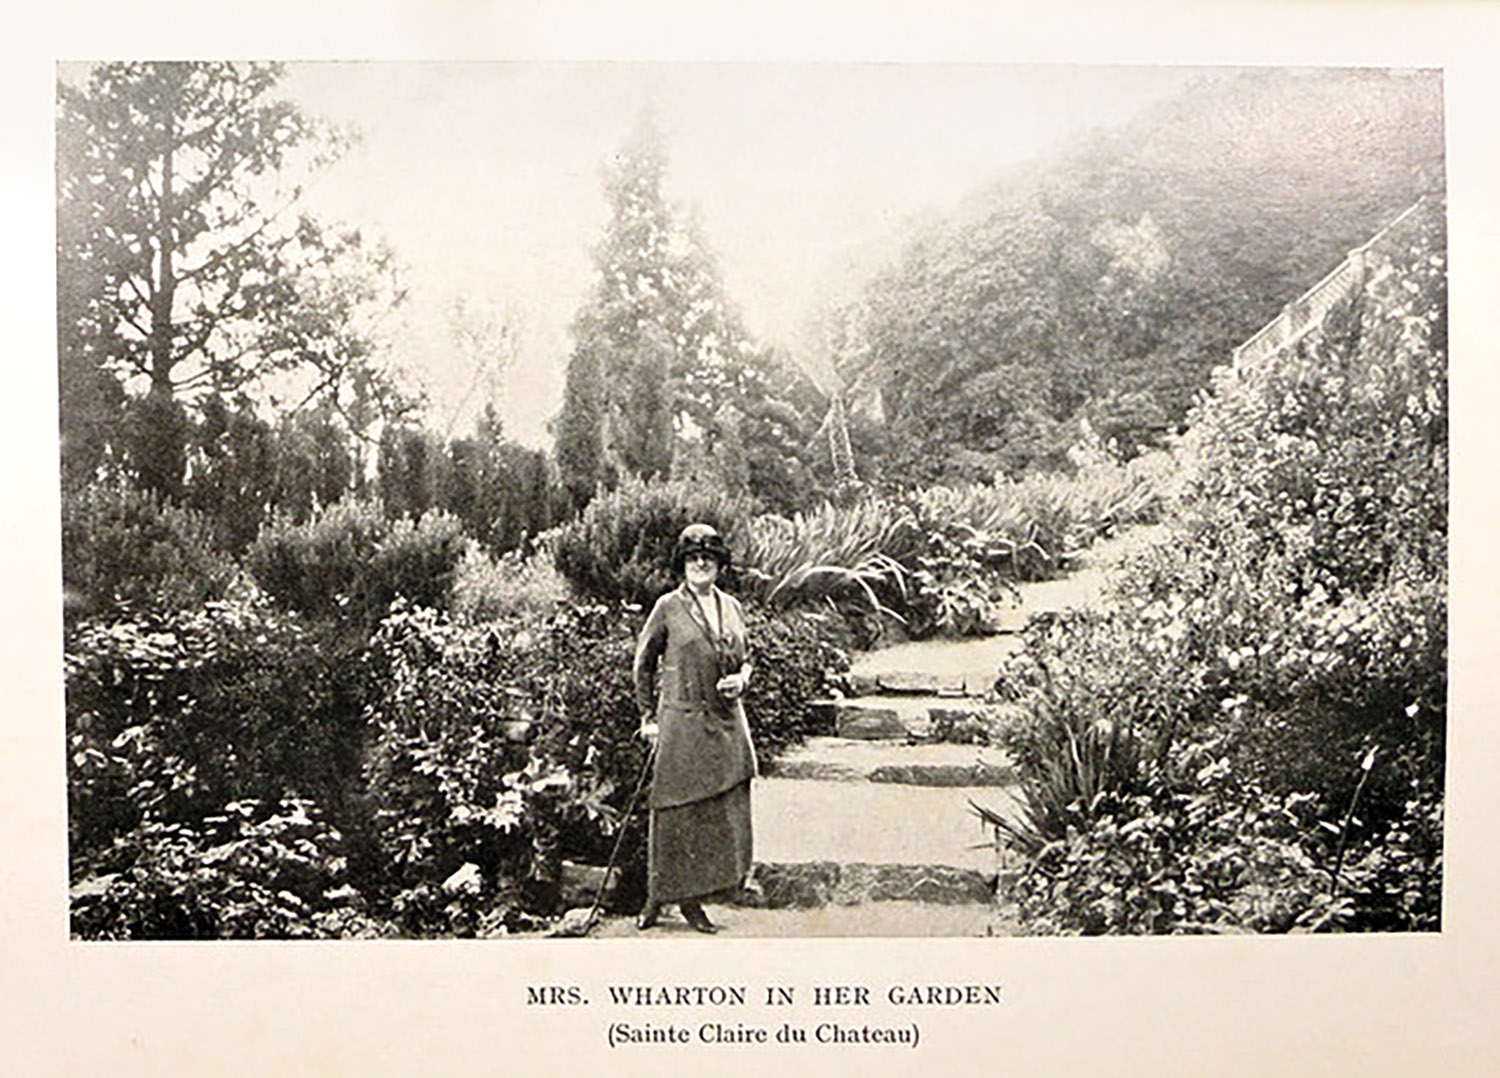 Vintage photograph of Edith Wharton in her garden.